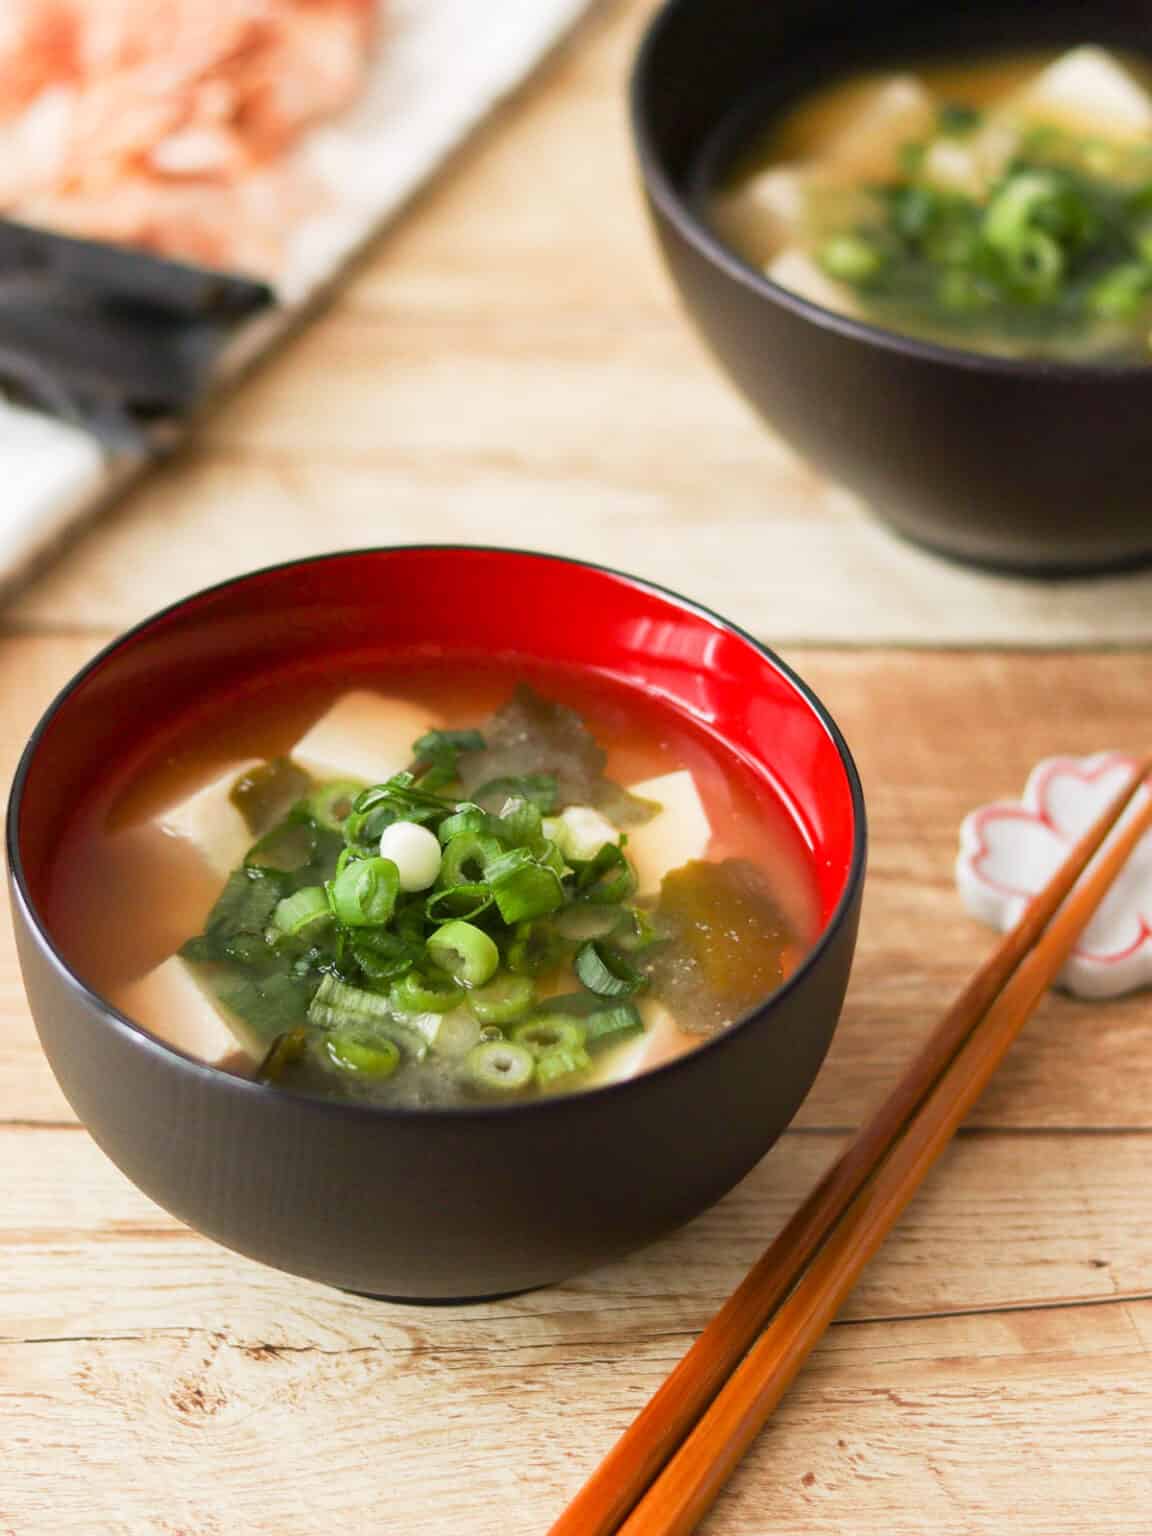 Authentic Japanese Miso Soup - Umami Pot